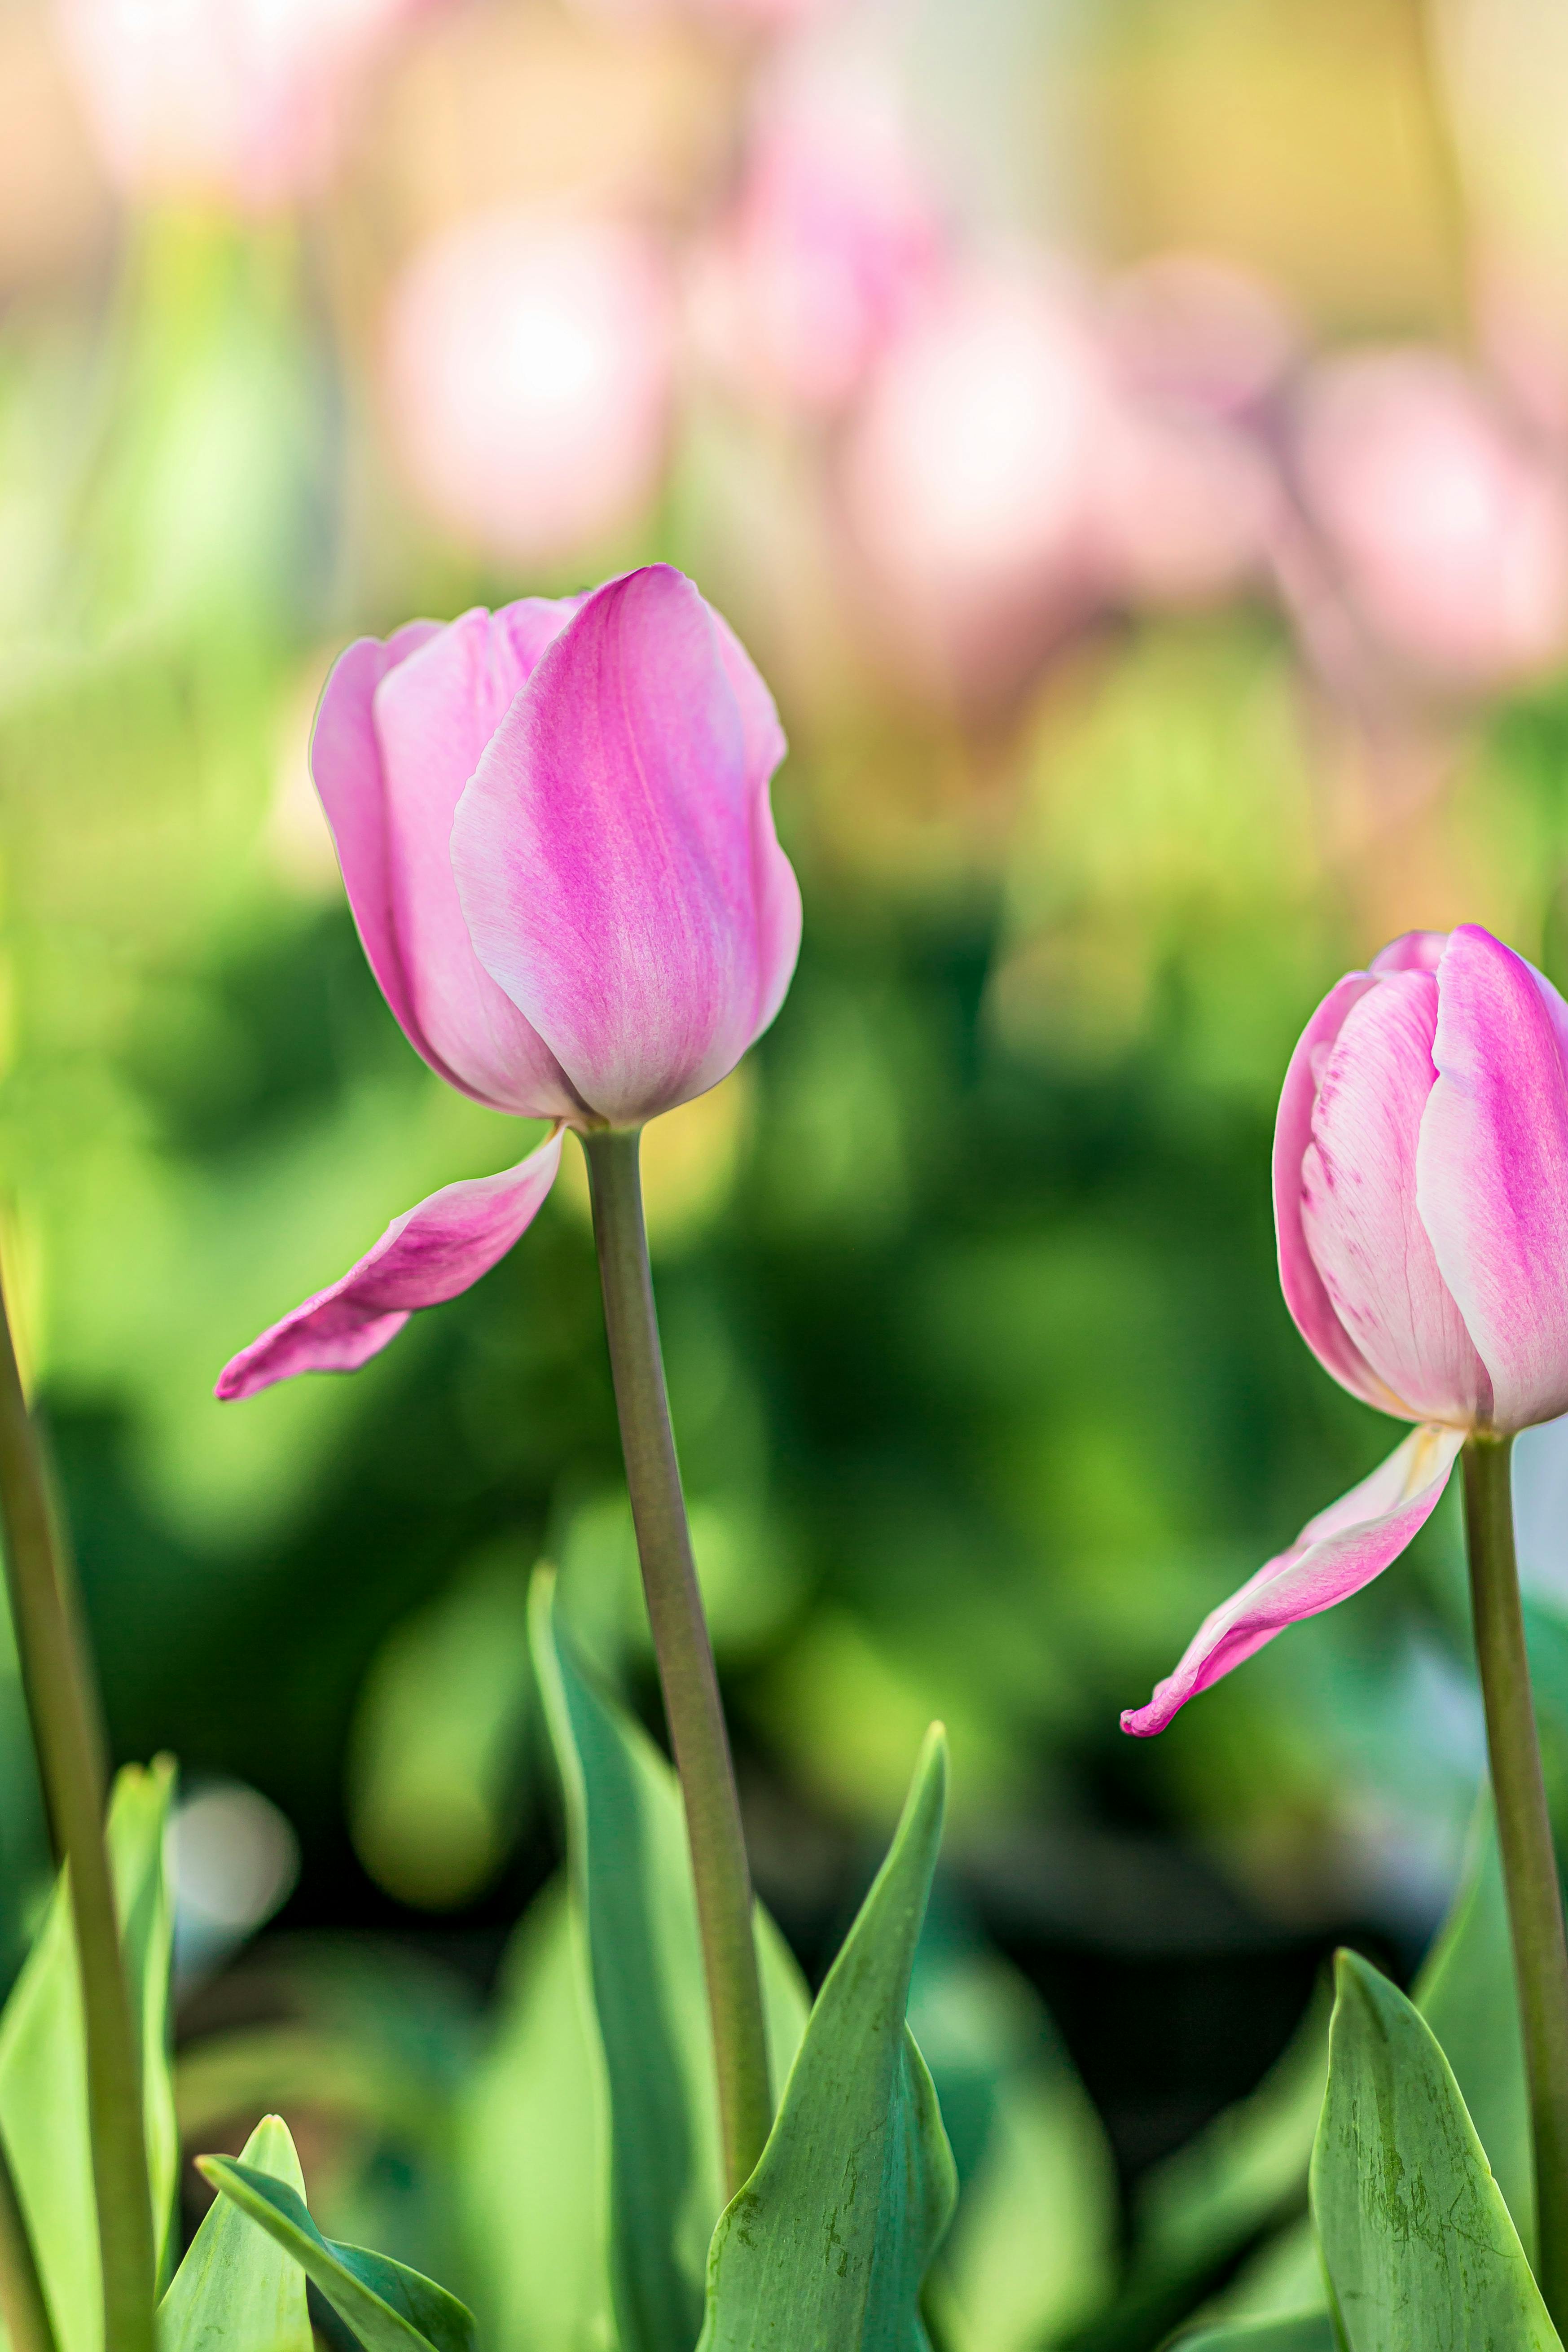 Thư giãn với những hình ảnh hoa tulip tuyệt đẹp được chụp bởi các nhiếp ảnh gia đẳng cấp. Điều này sẽ giúp bạn thăng hoa với niềm đam mê sáng tạo và tạo ra những kiệt tác nghệ thuật của riêng mình.